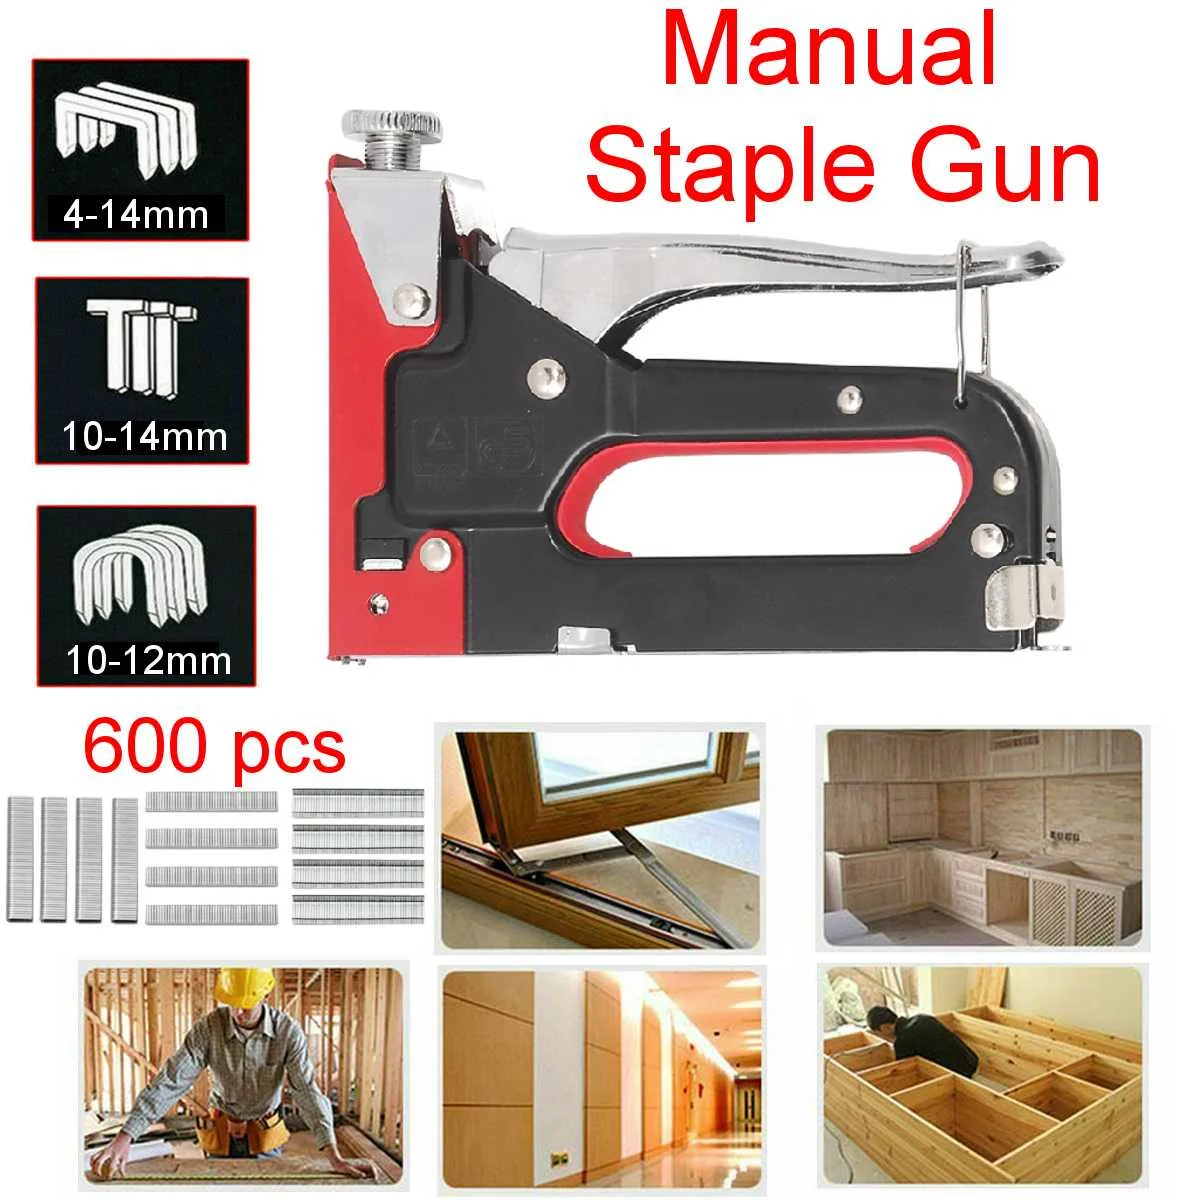 

Пистолет для ногтей 3-в-1, степлер «сделай сам» для строительства мебели, степлер для обивки и степлера с 600 скобами, инструменты для столярны...